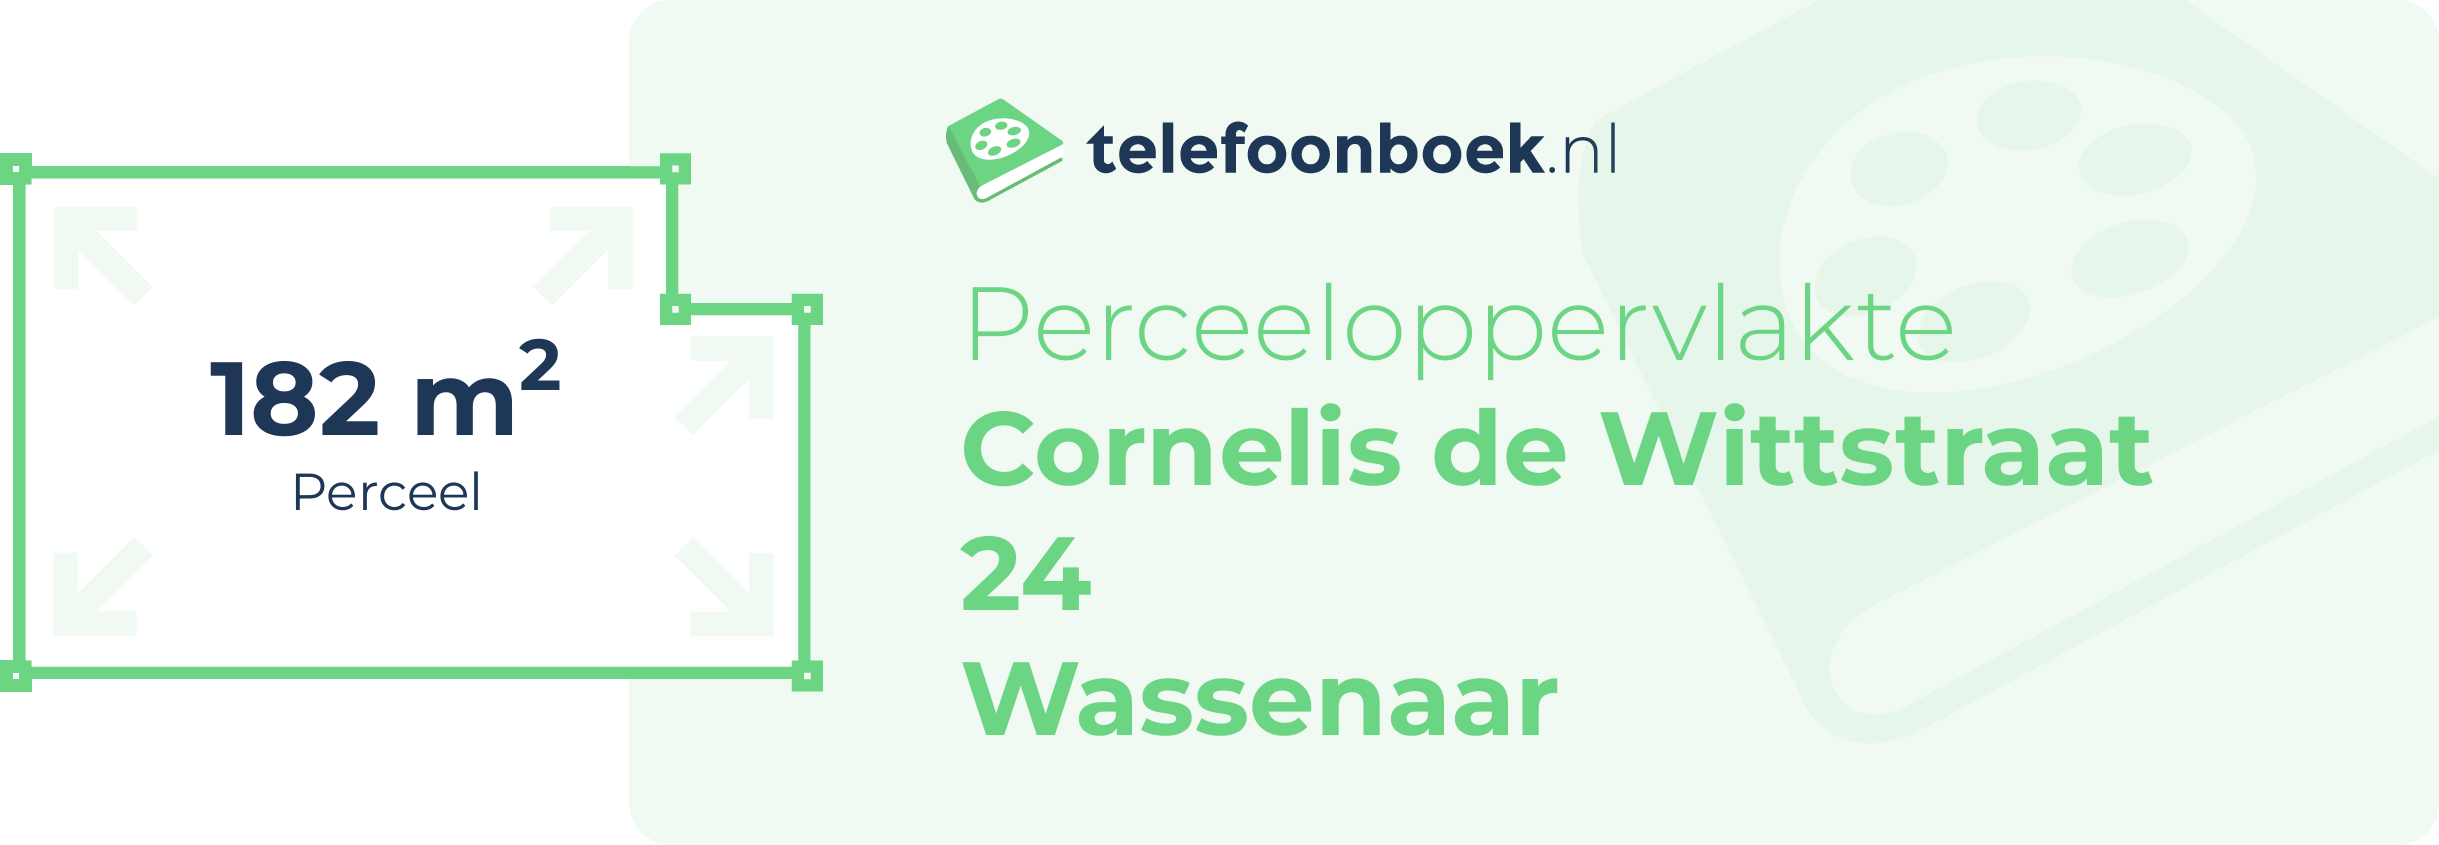 Perceeloppervlakte Cornelis De Wittstraat 24 Wassenaar